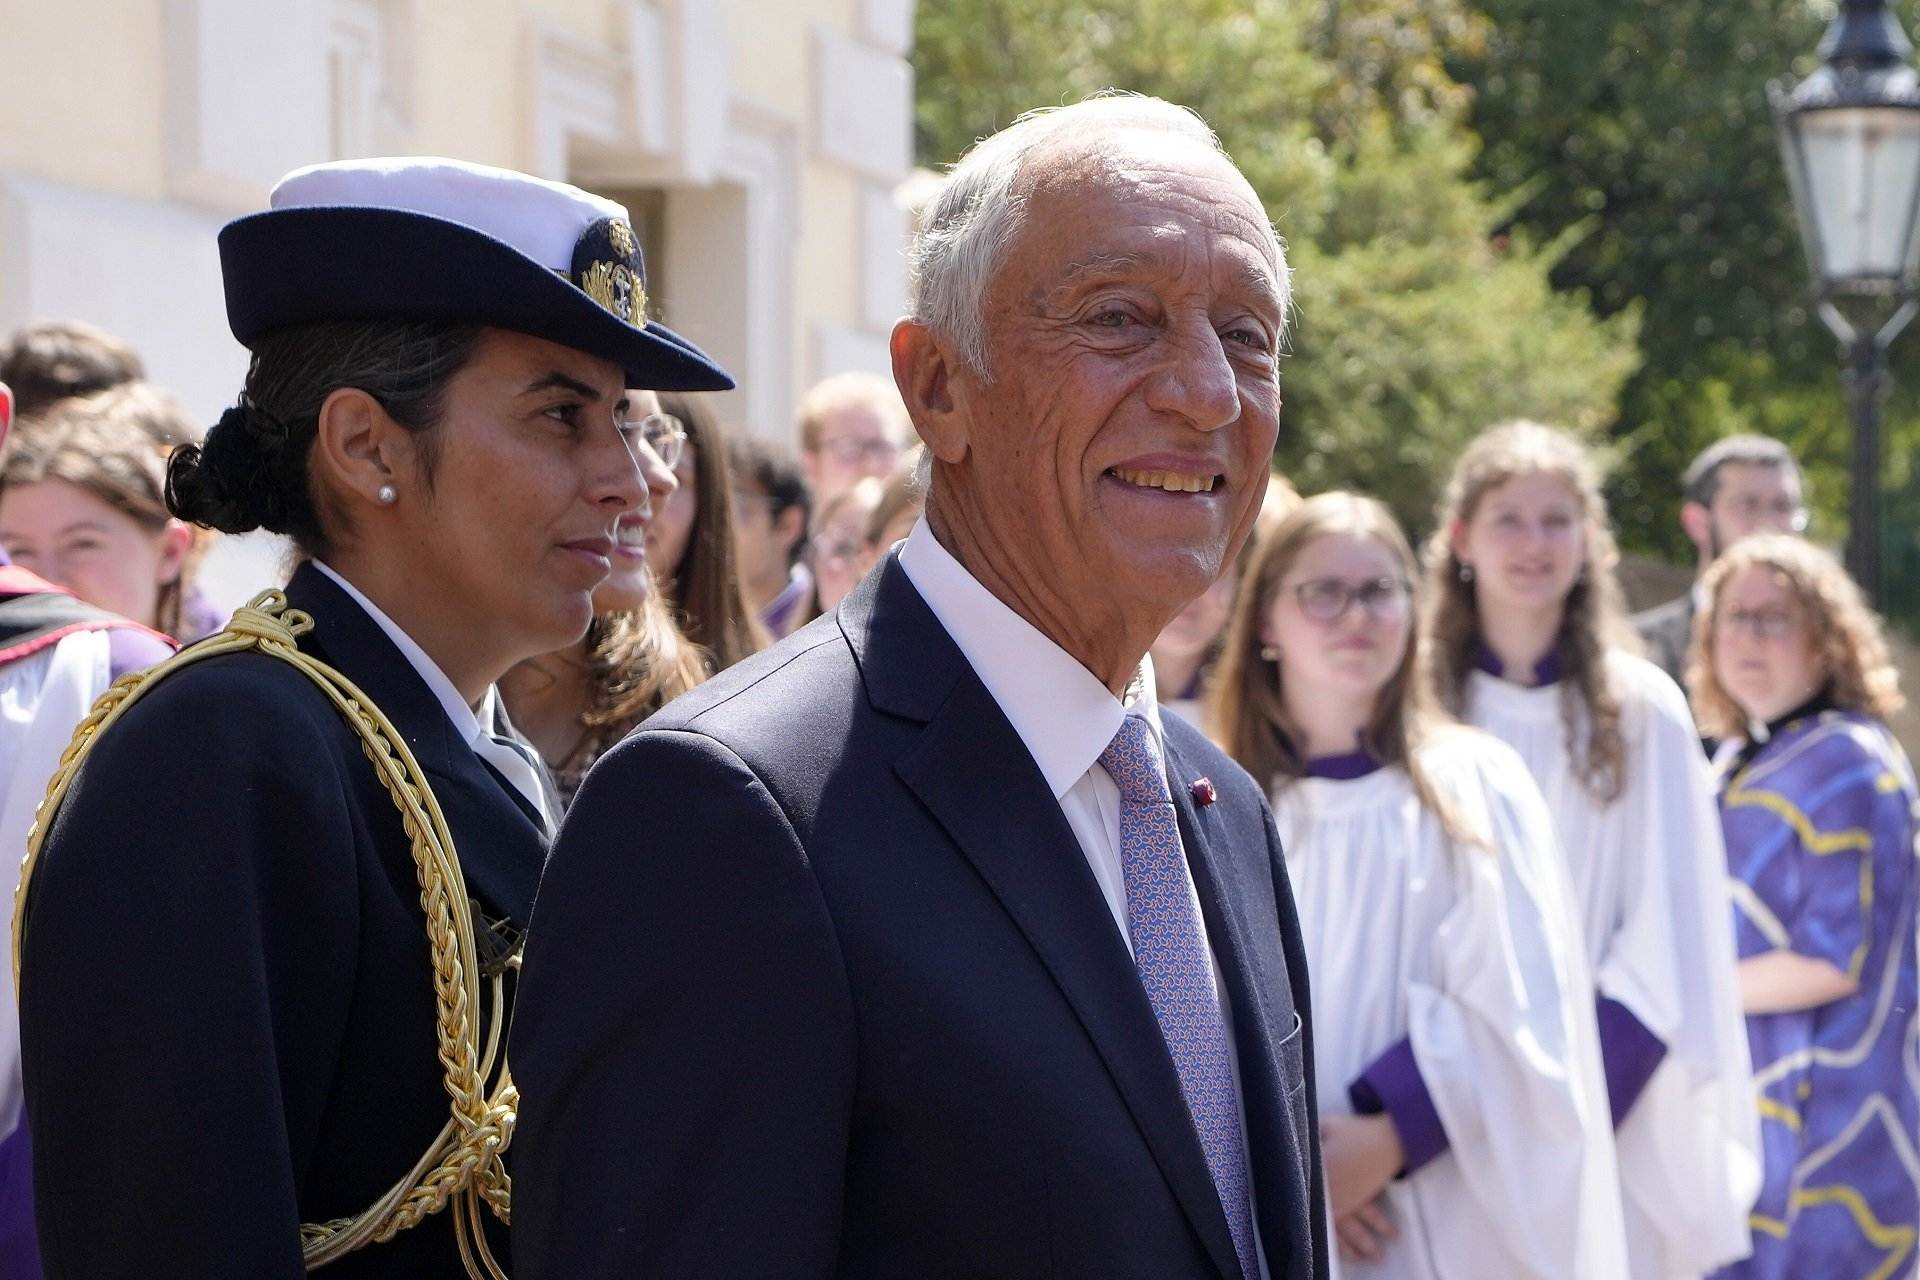 Polémica por un comentario machista del presidente de Portugal sobre el escote de una joven